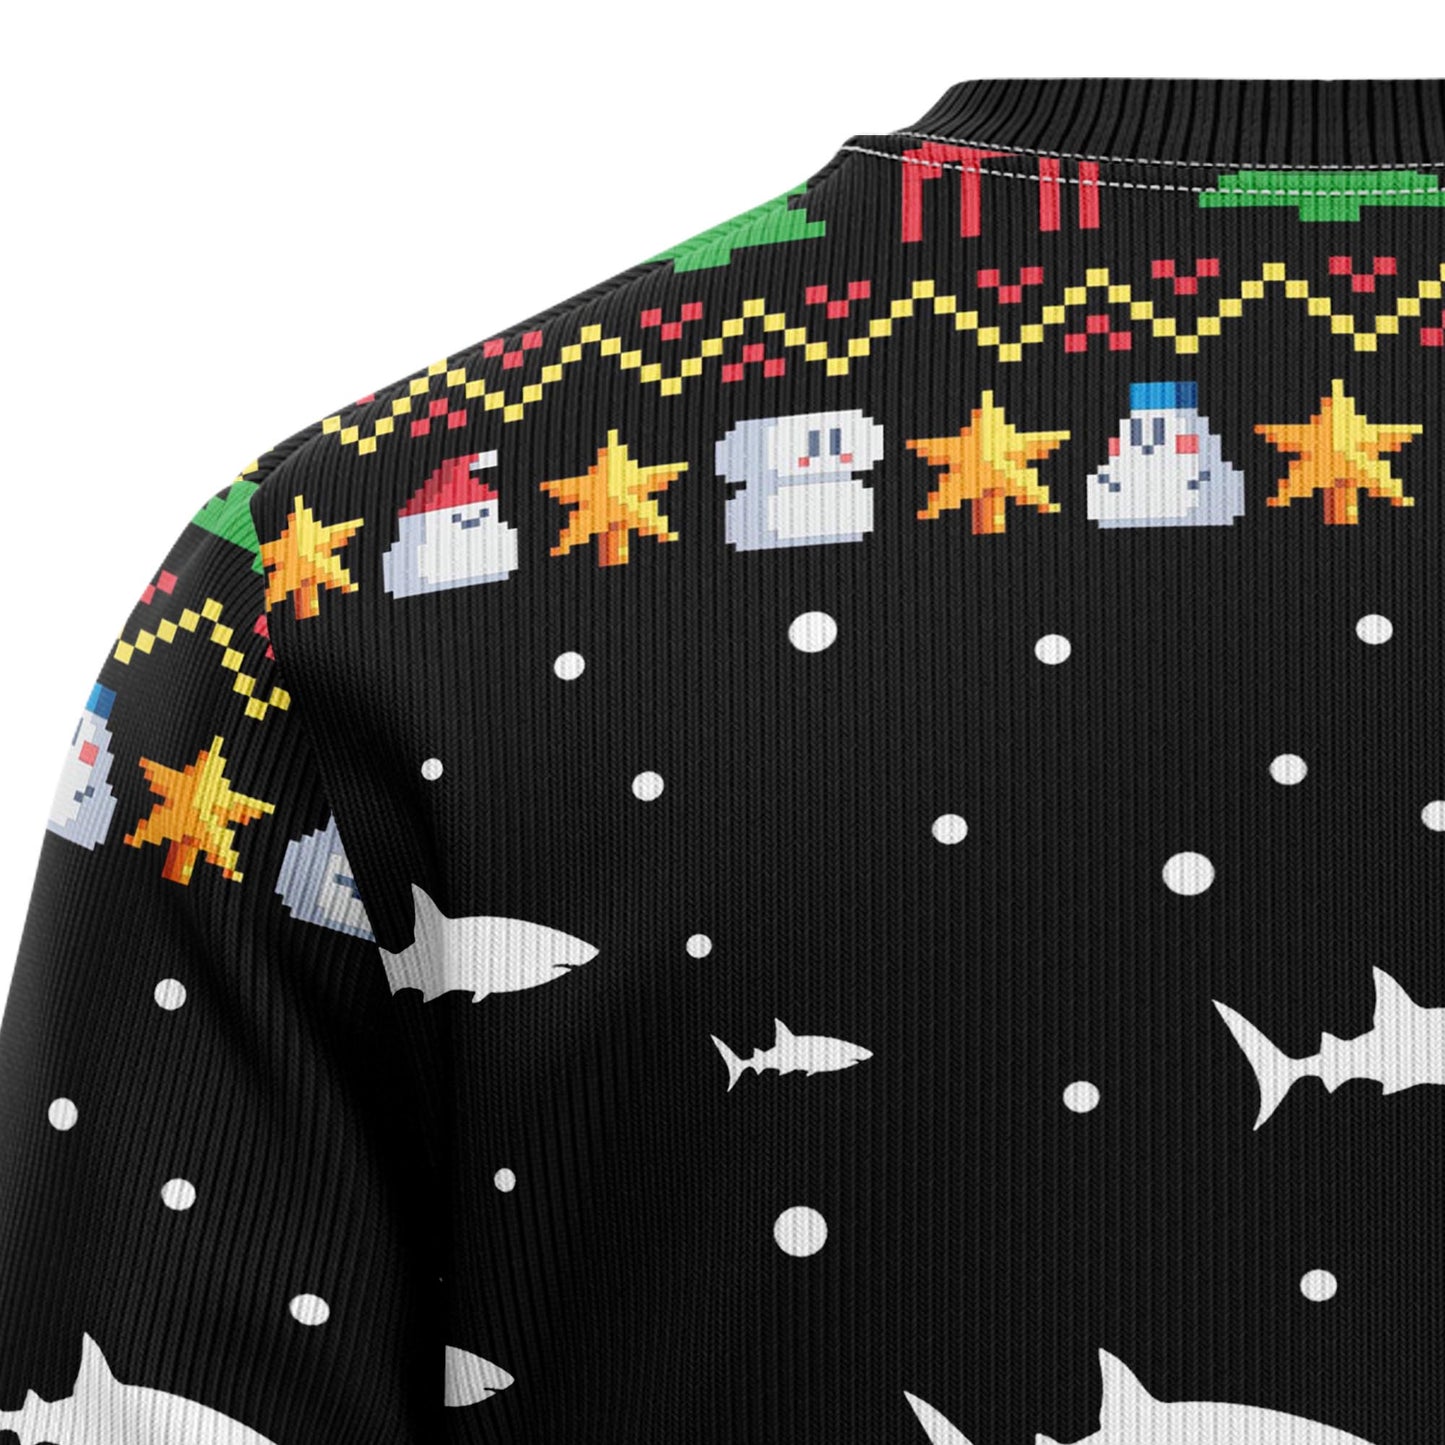 Santa Shark Ho Ho Ho D3009 Ugly Christmas Sweater